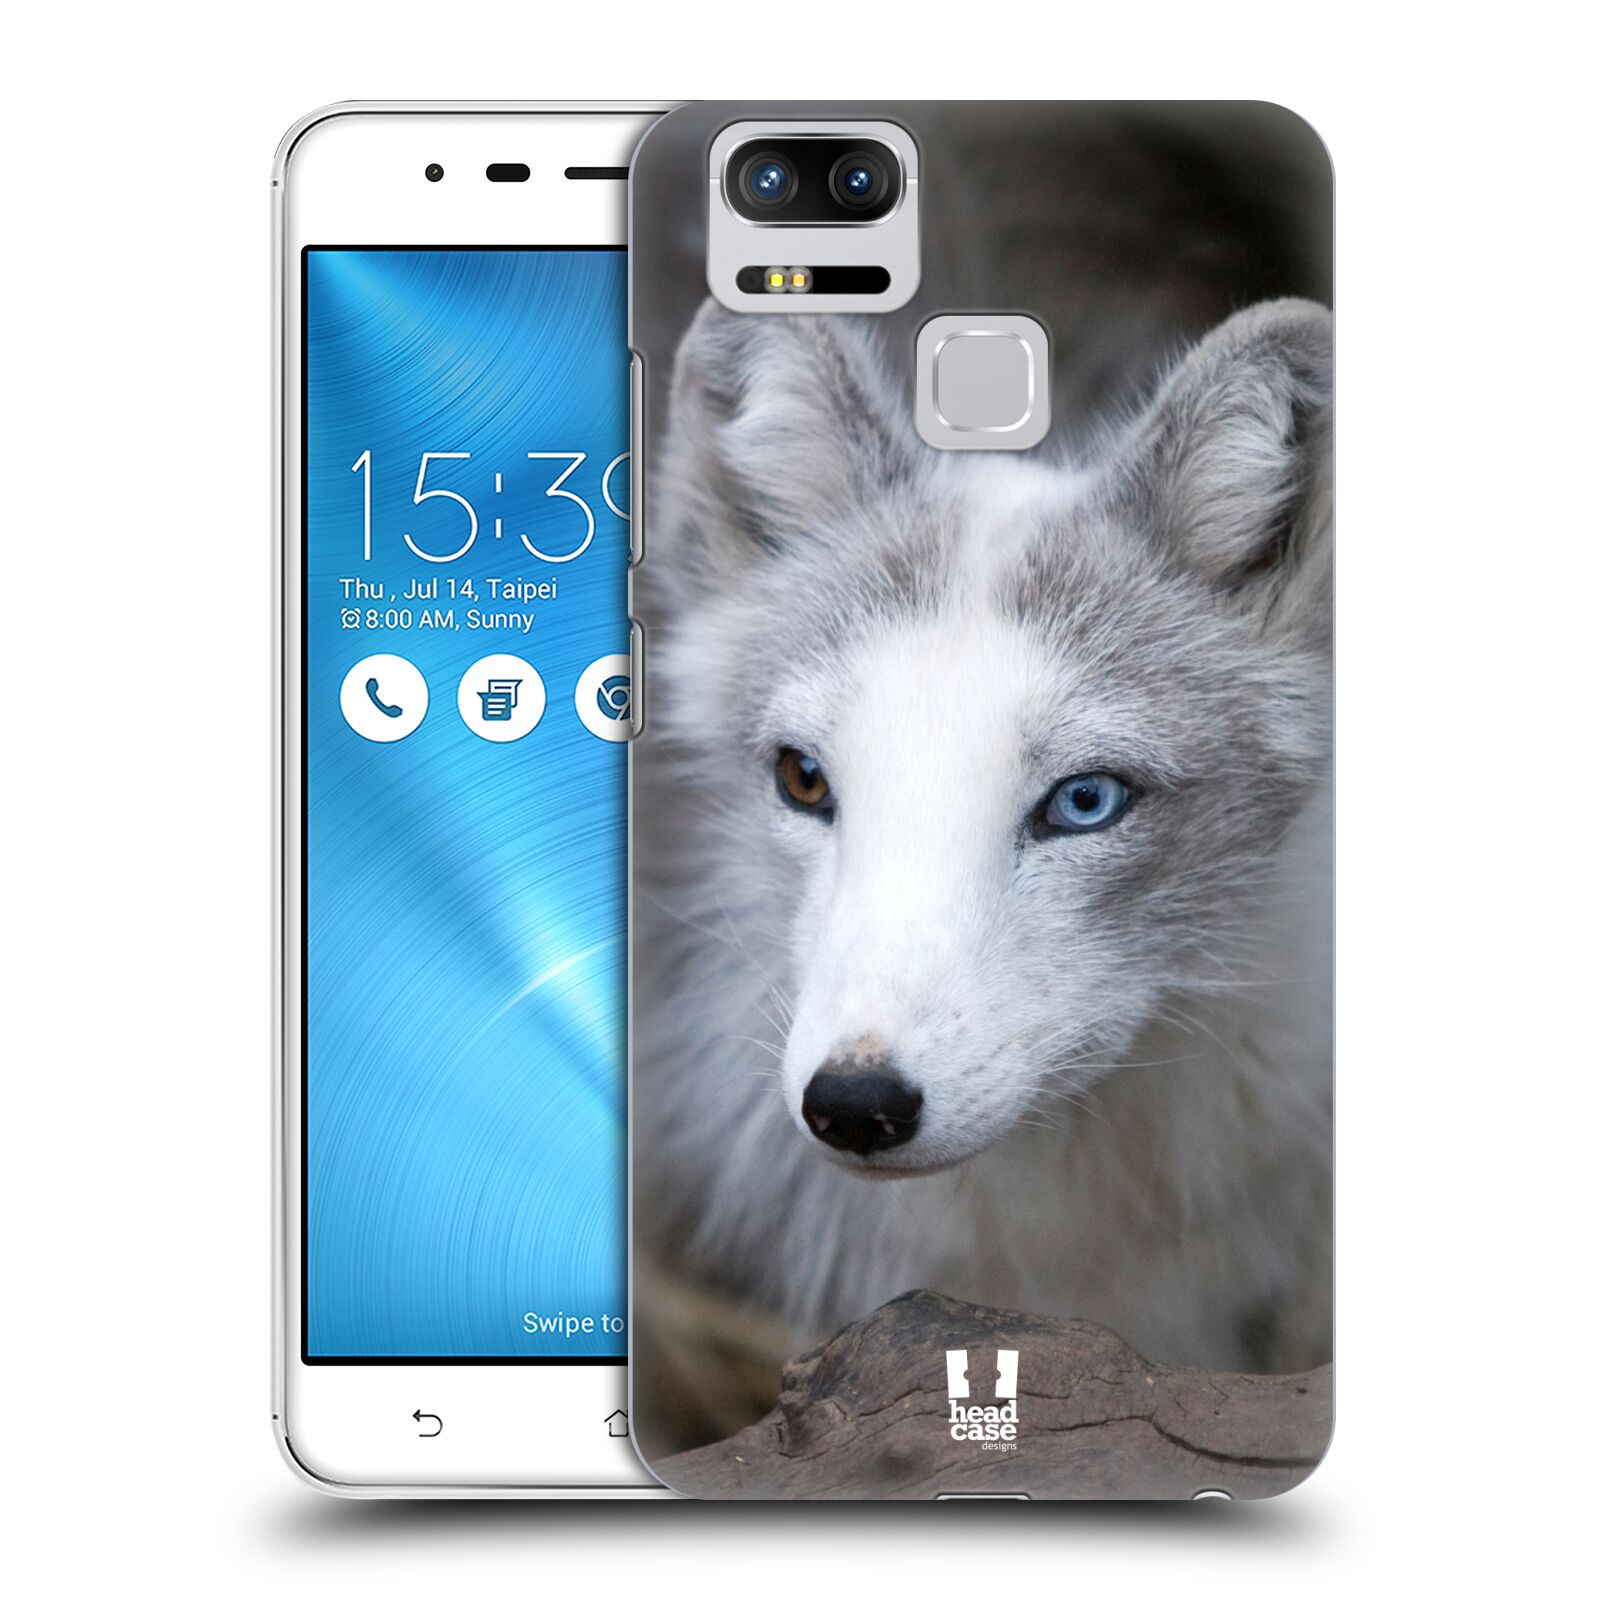 HEAD CASE plastový obal na mobil Asus Zenfone 3 Zoom ZE553KL vzor slavná zvířata foto  Liška polární